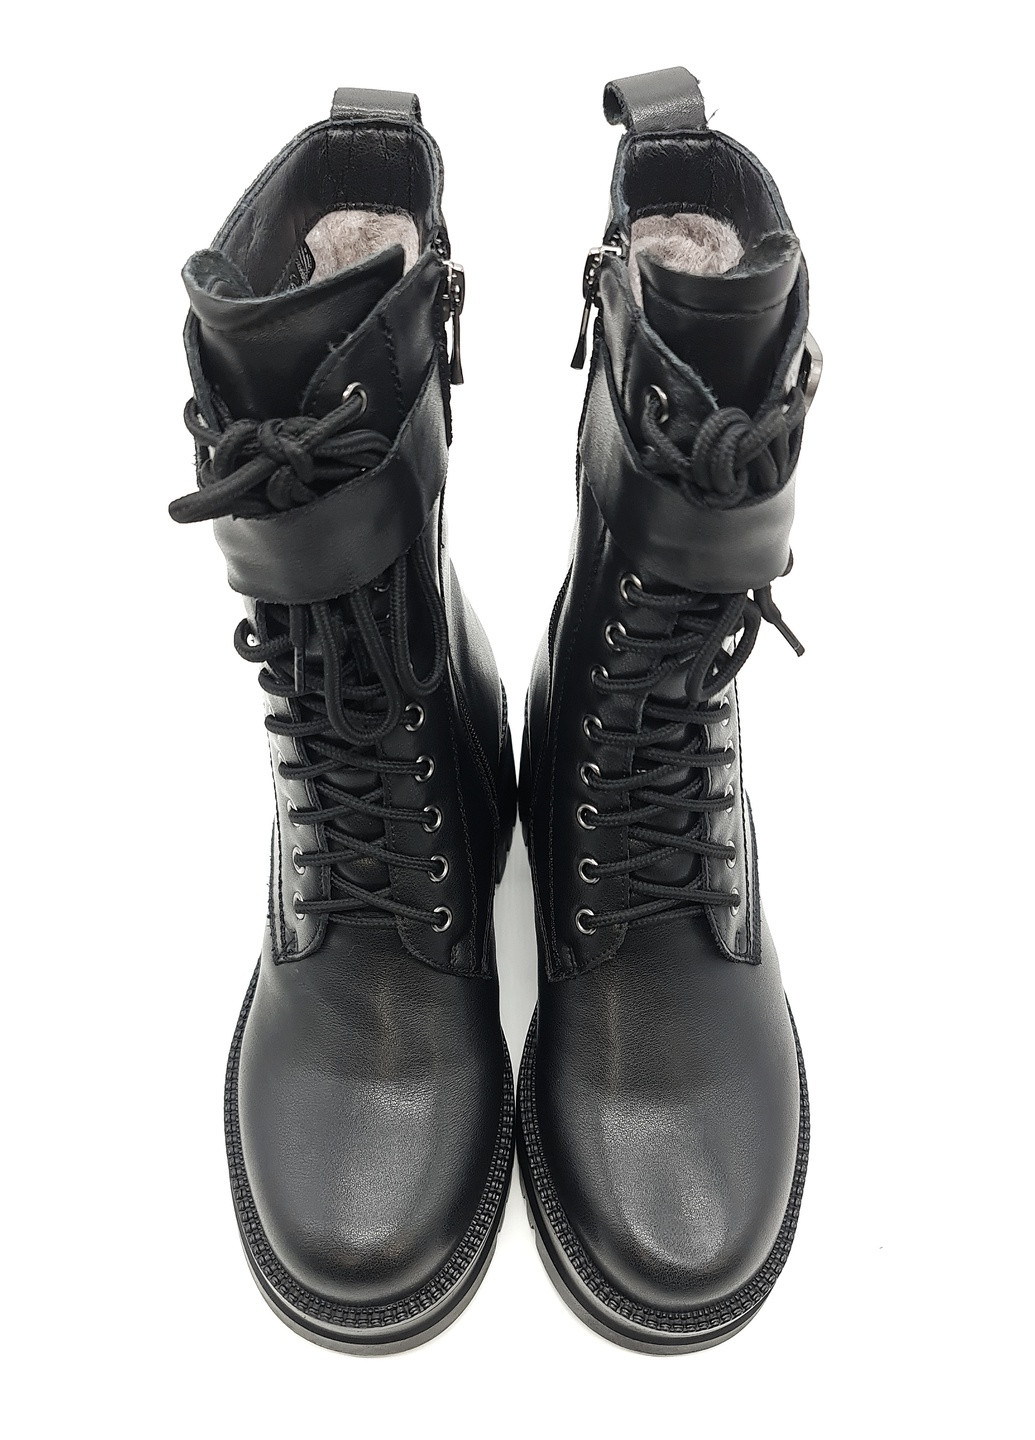 Осенние женские ботинки черные кожаные rf-12-1 25,5 см (р) Raffelli